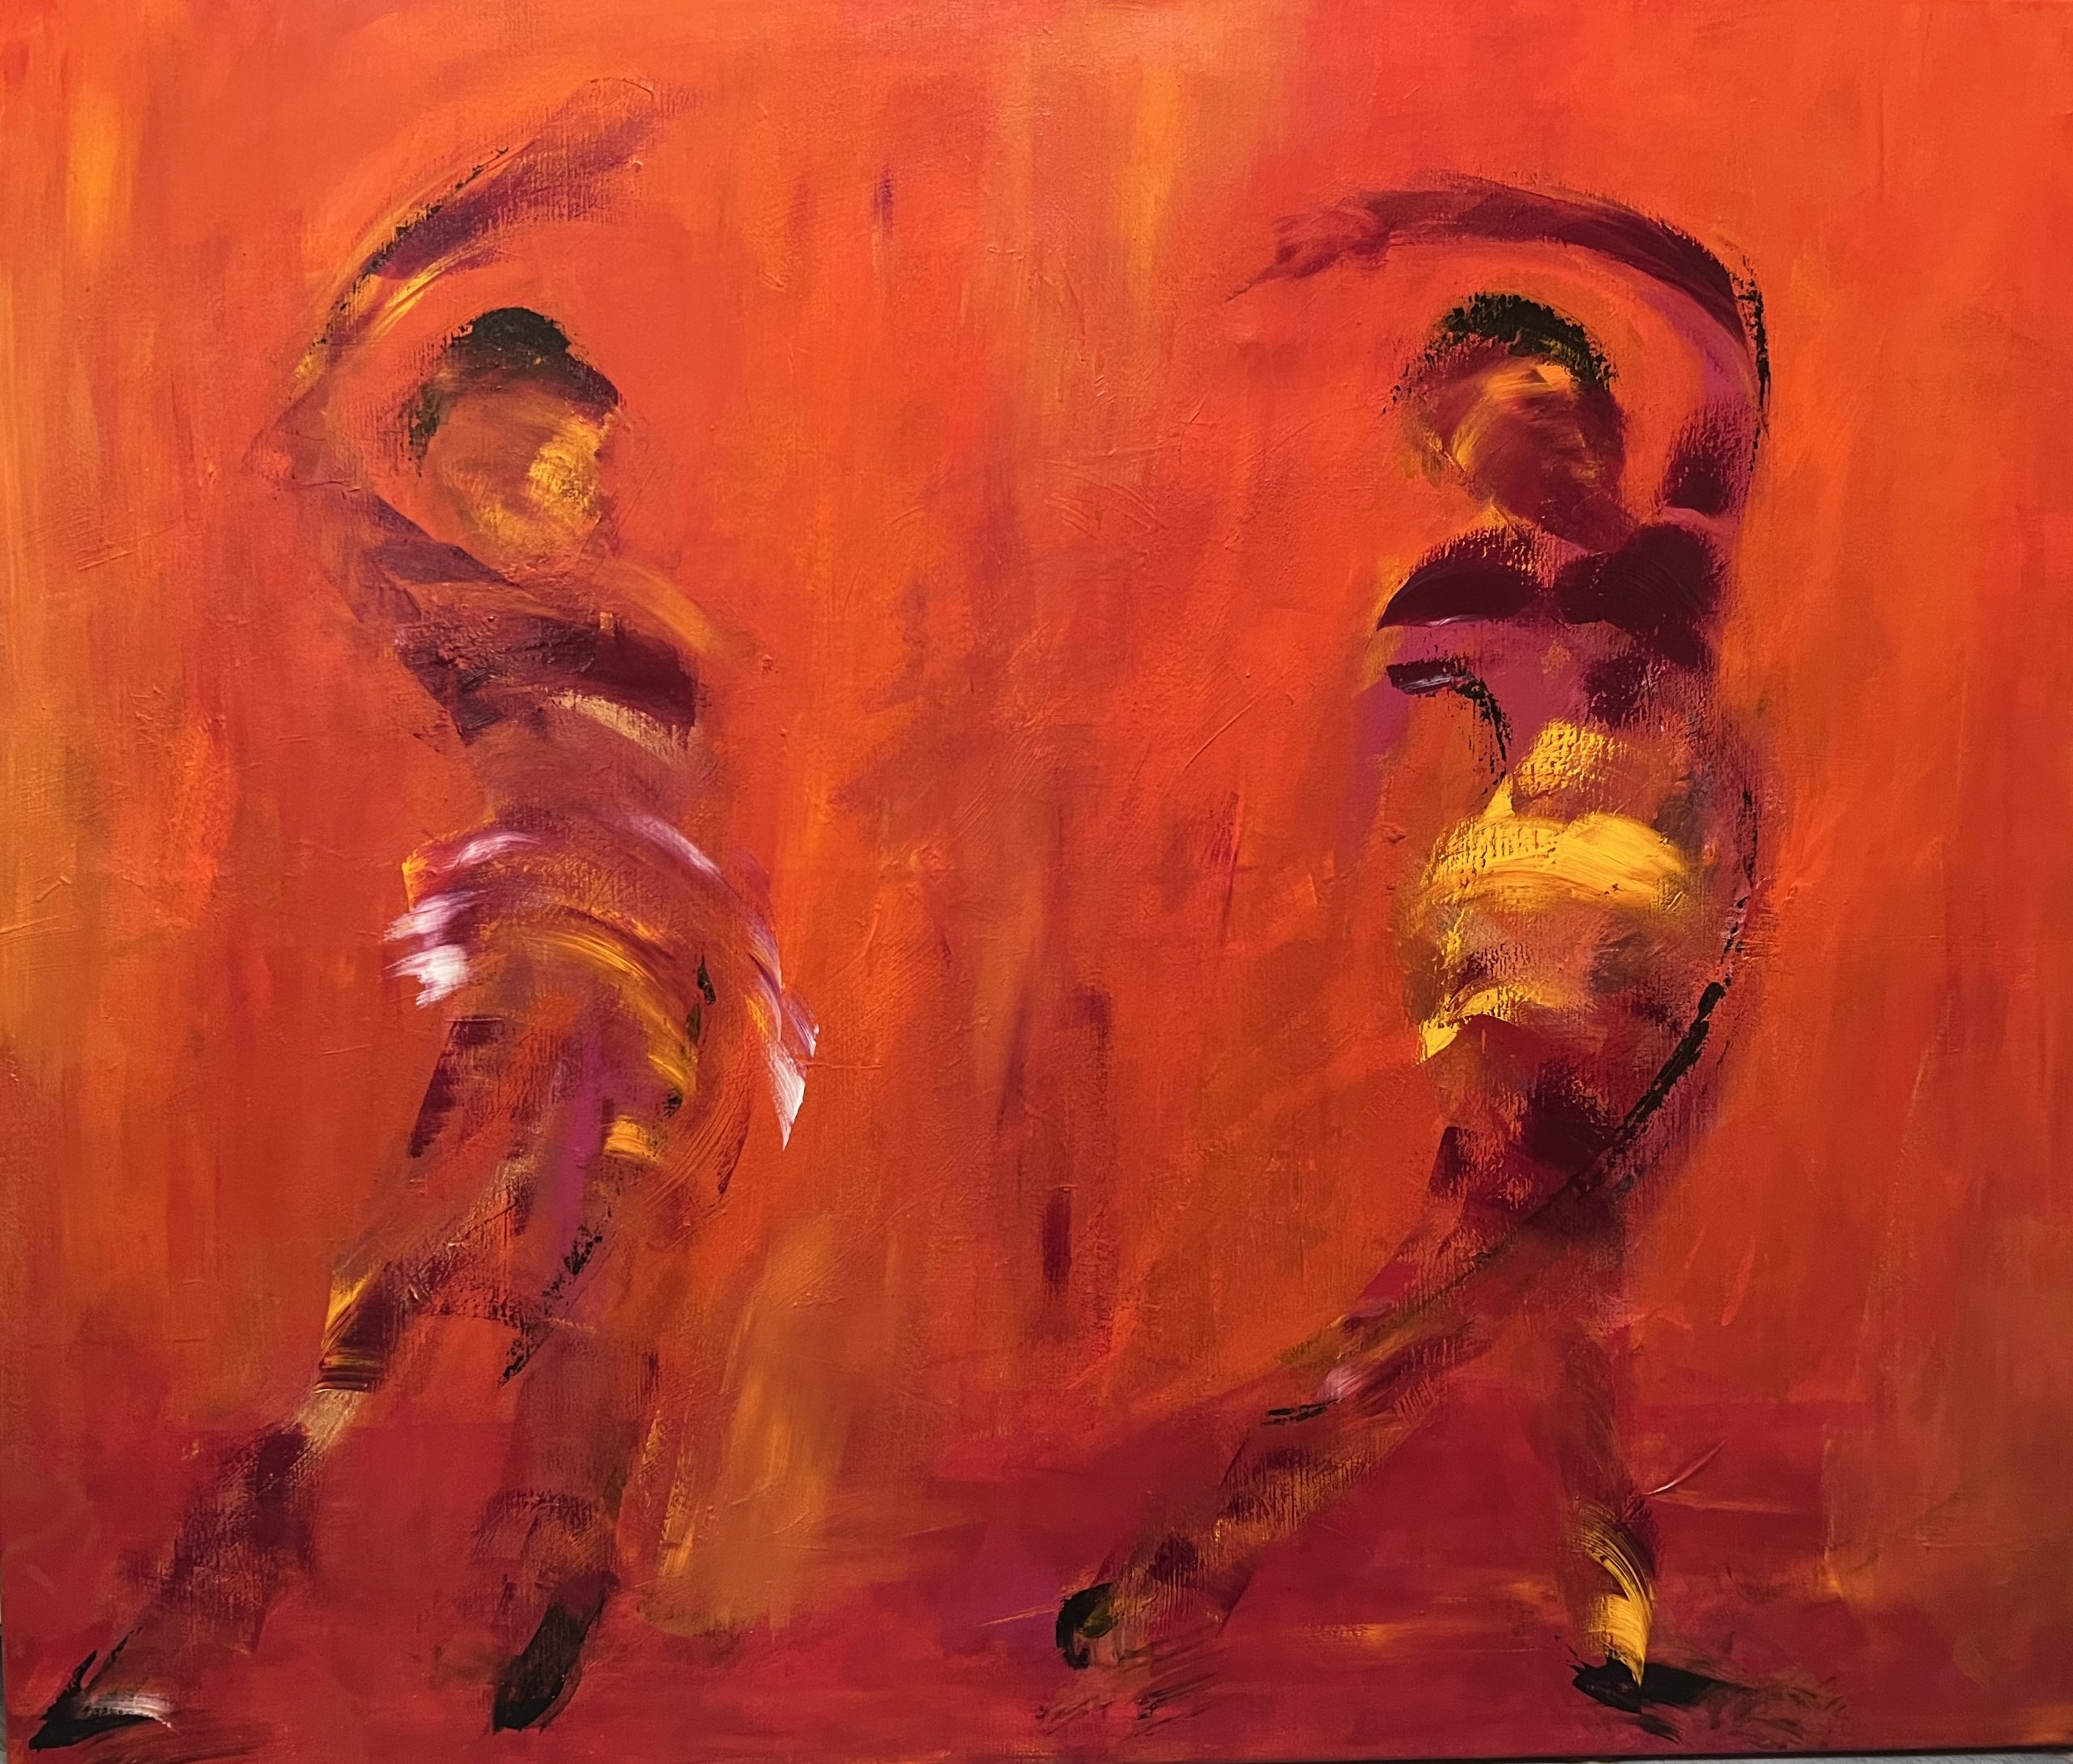  Voigt Steffensen har inspireret mig med hans skønne farverige dansere.   Dejligt varmt maleri med masser af bevægelse.